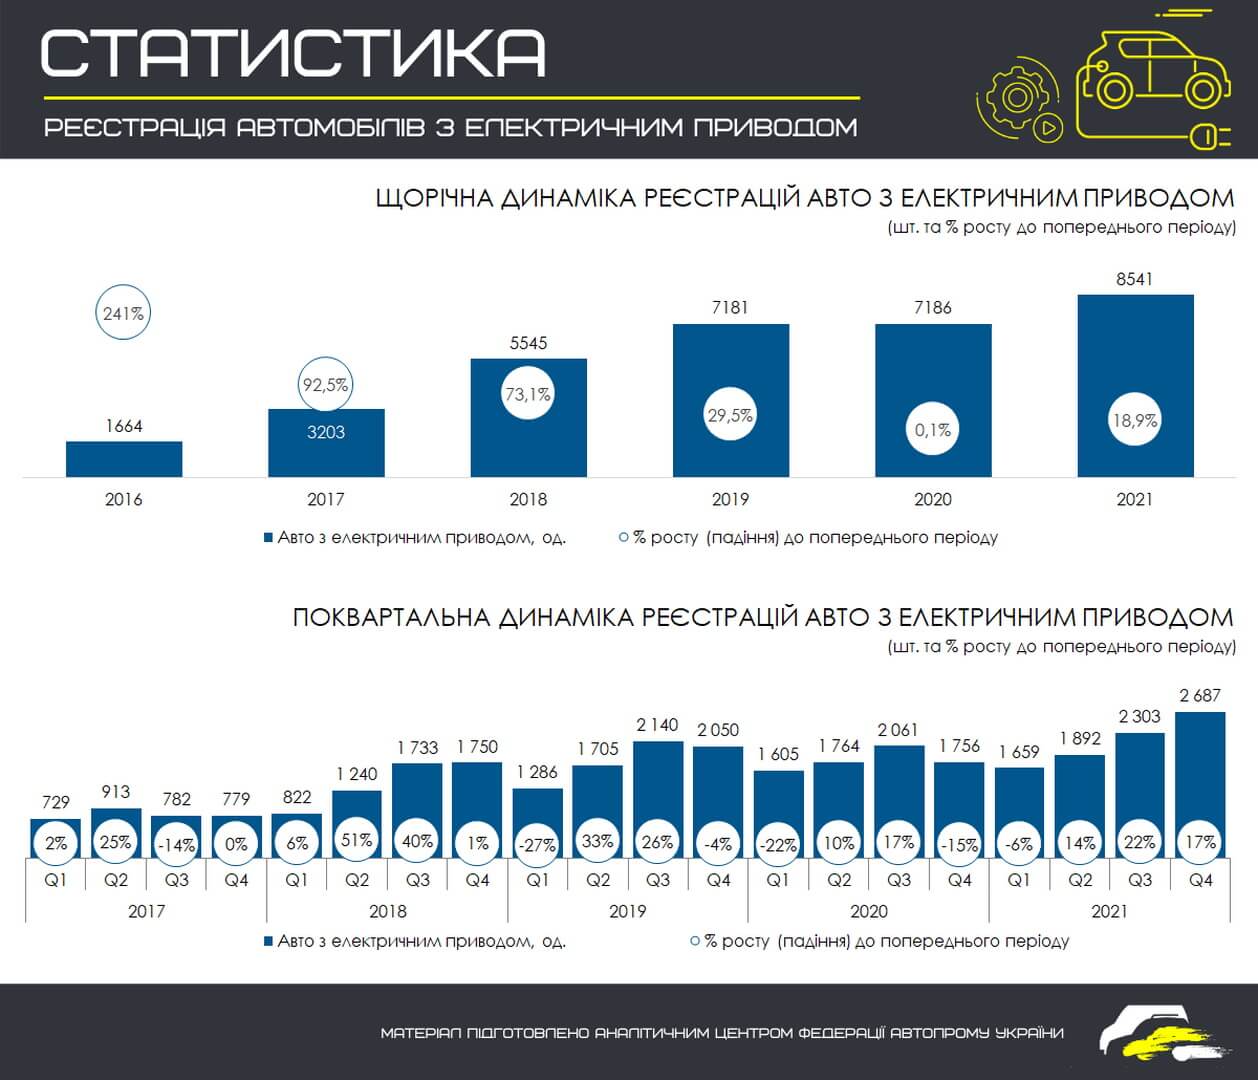 Ежегодная динамика регистраций электромобилей в Украине с 2016 по 2021 год